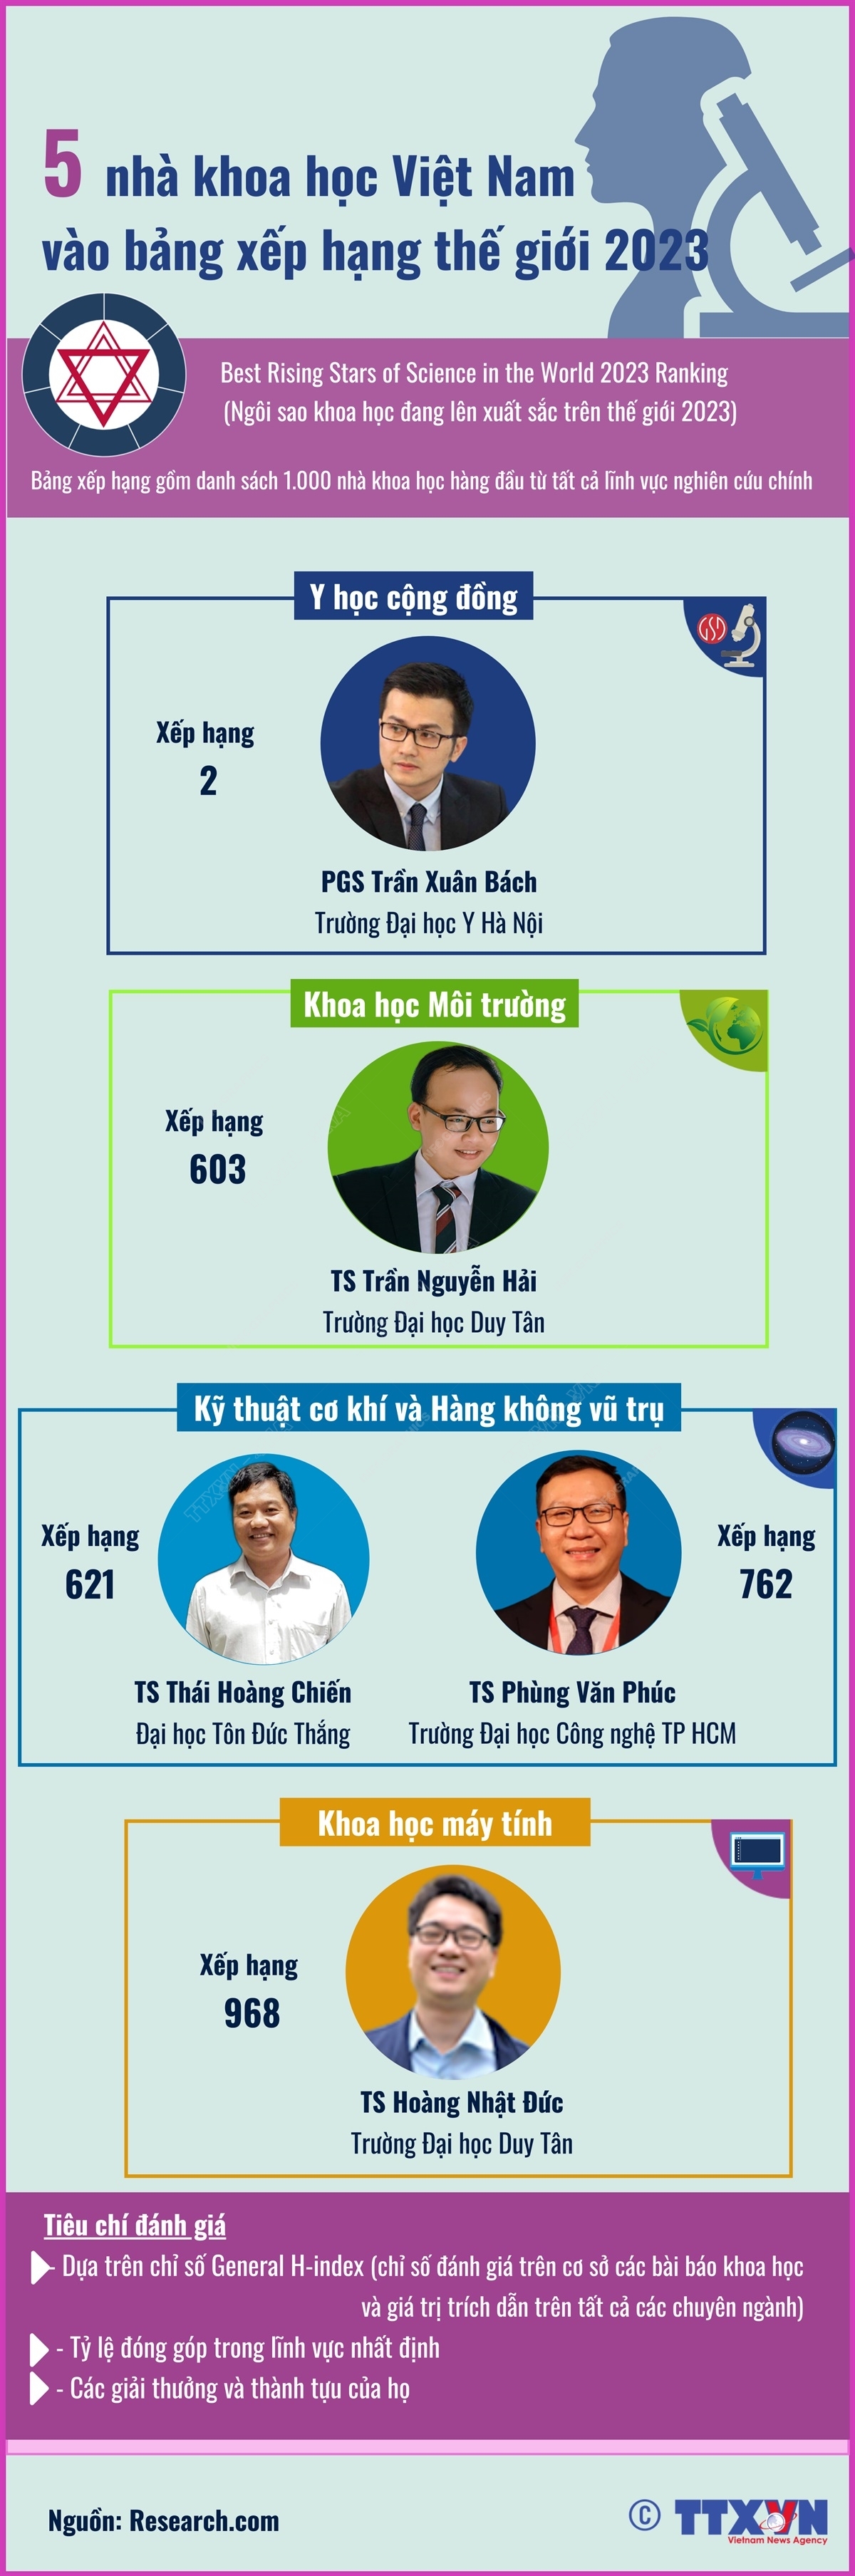 5 nhà khoa học Việt Nam vào bảng xếp hạng ngôi sao khoa học đang lên năm 2023